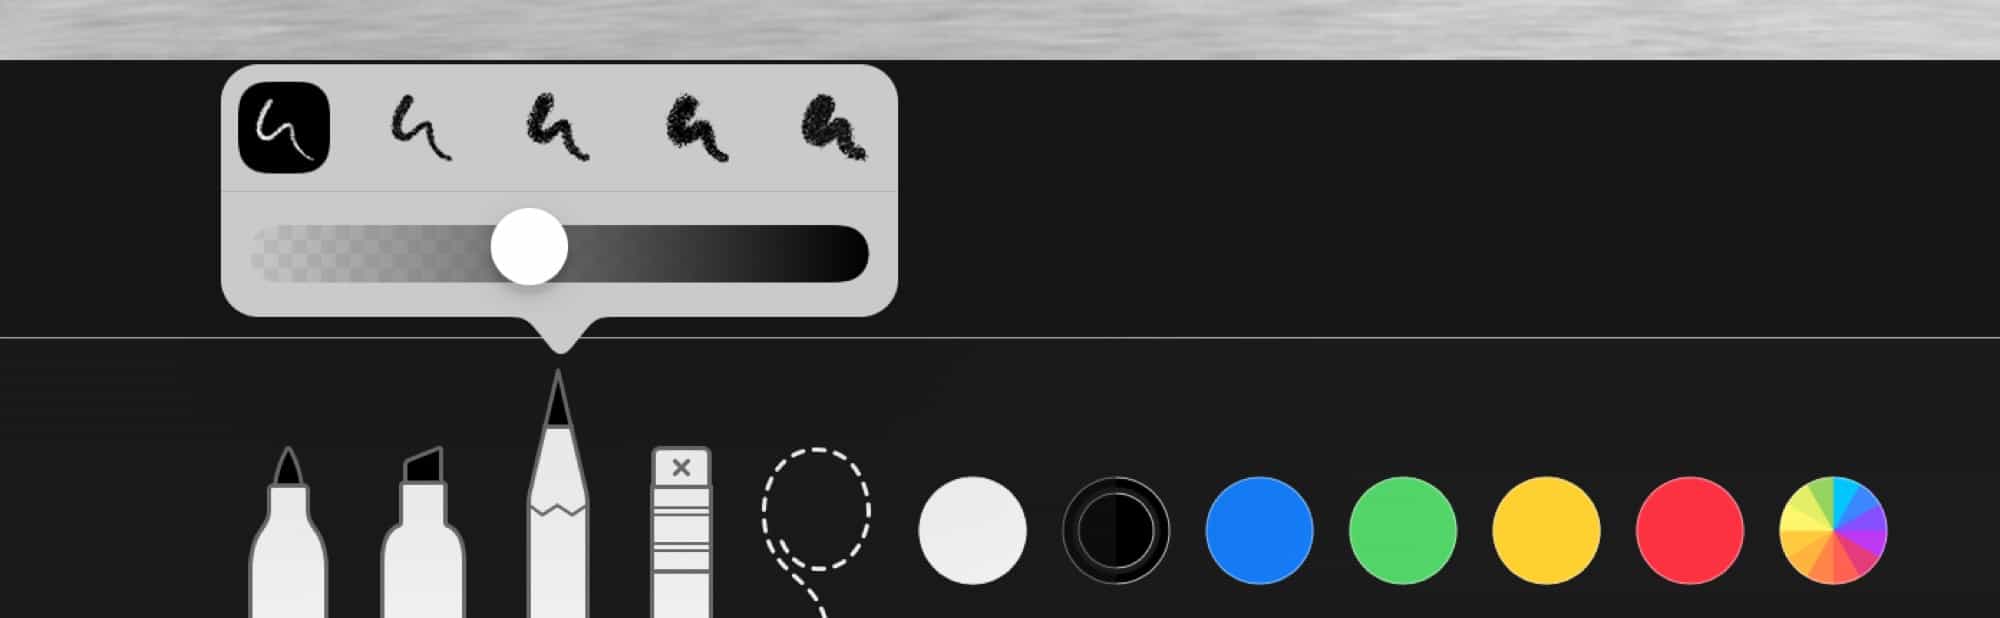 iOS 12 işaretleme özelliği kalemler